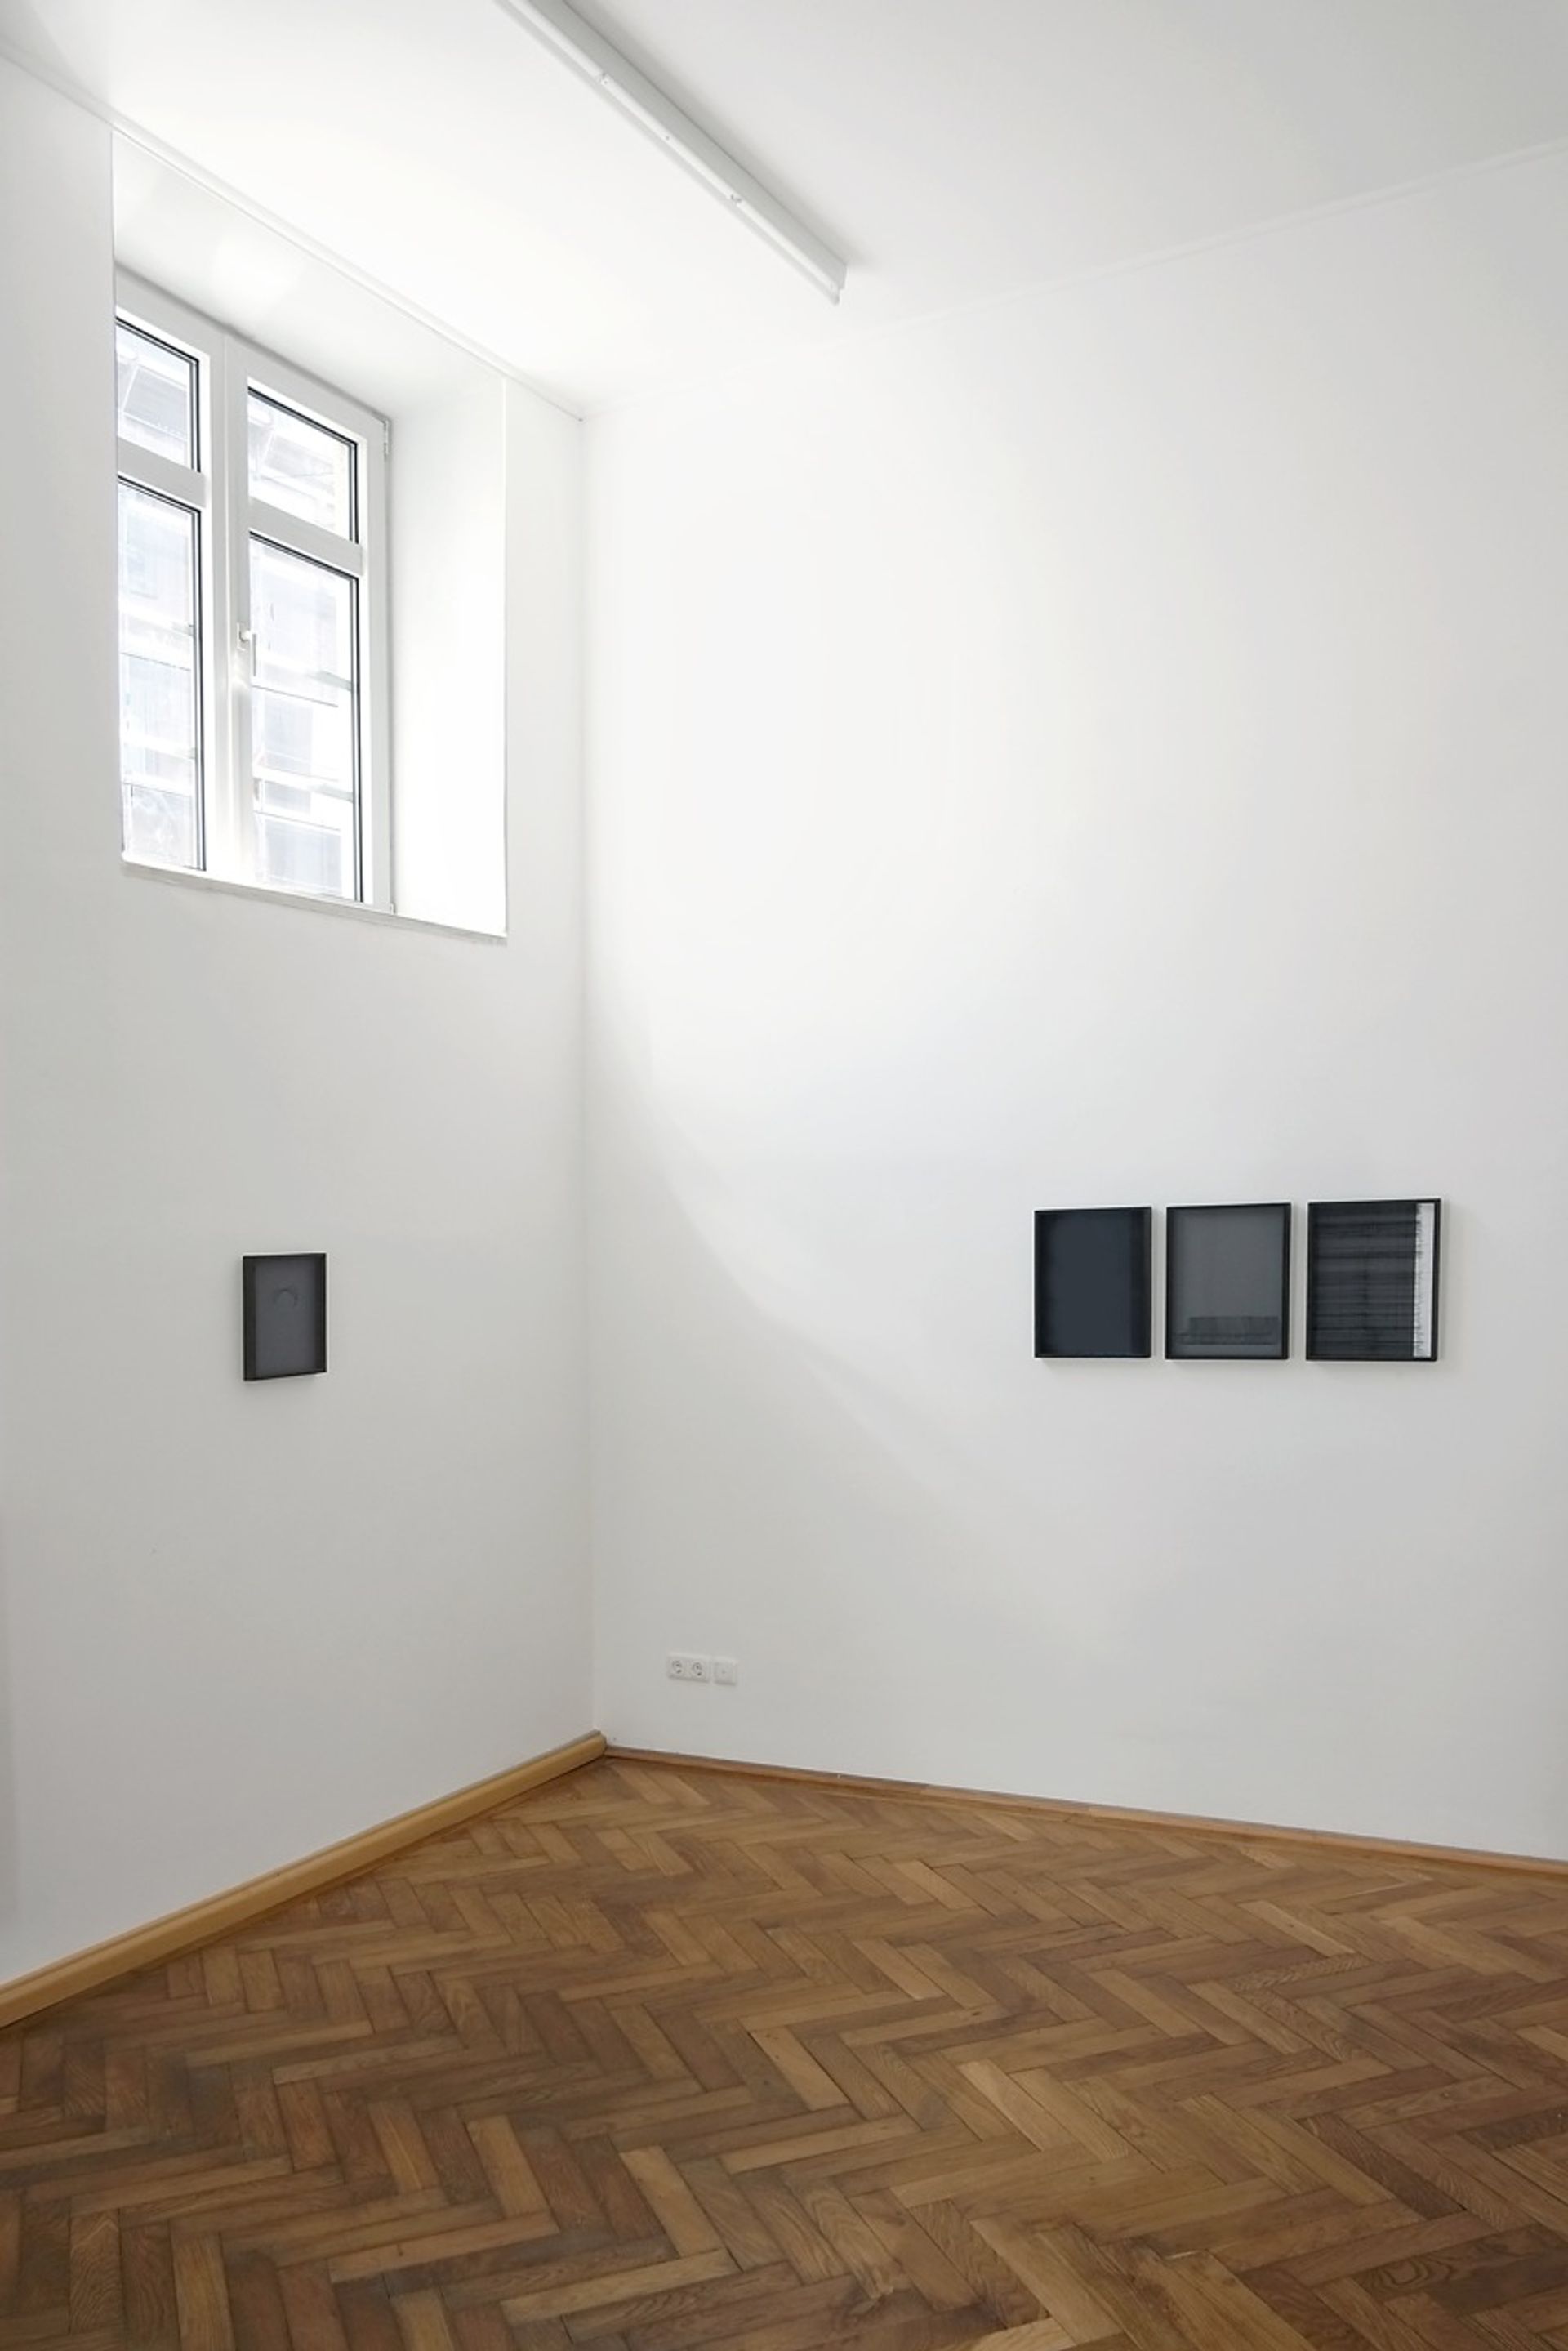 Installation view: “Alex Grein ∩ Anna Vogel”, 2015